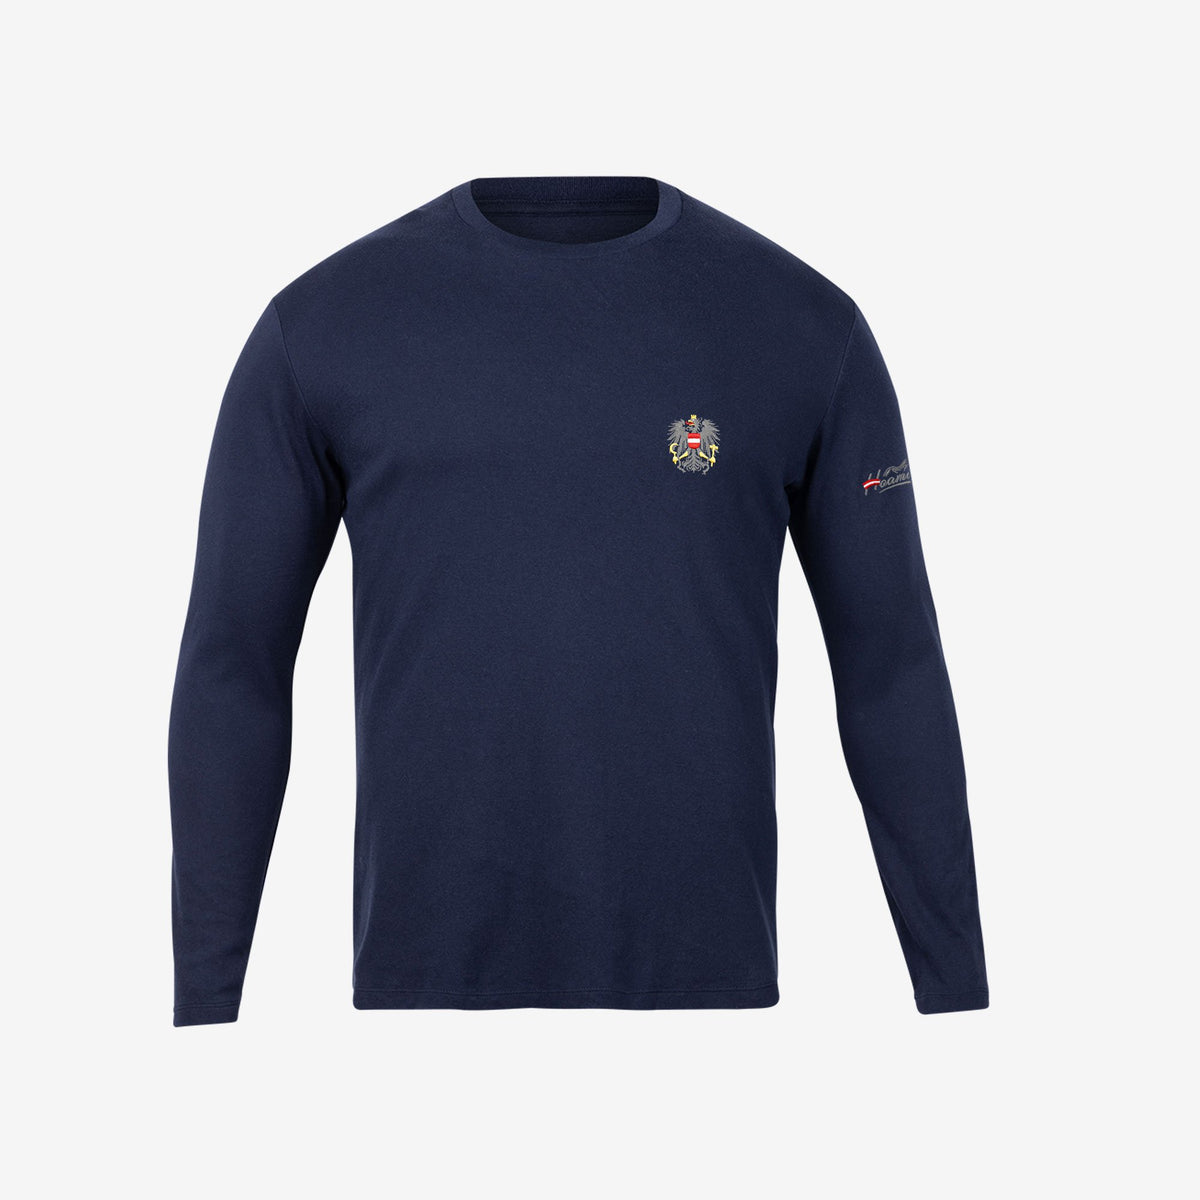 Navy Blau Österreich Adler Herren Sweater #Farbe_Navy-Blau